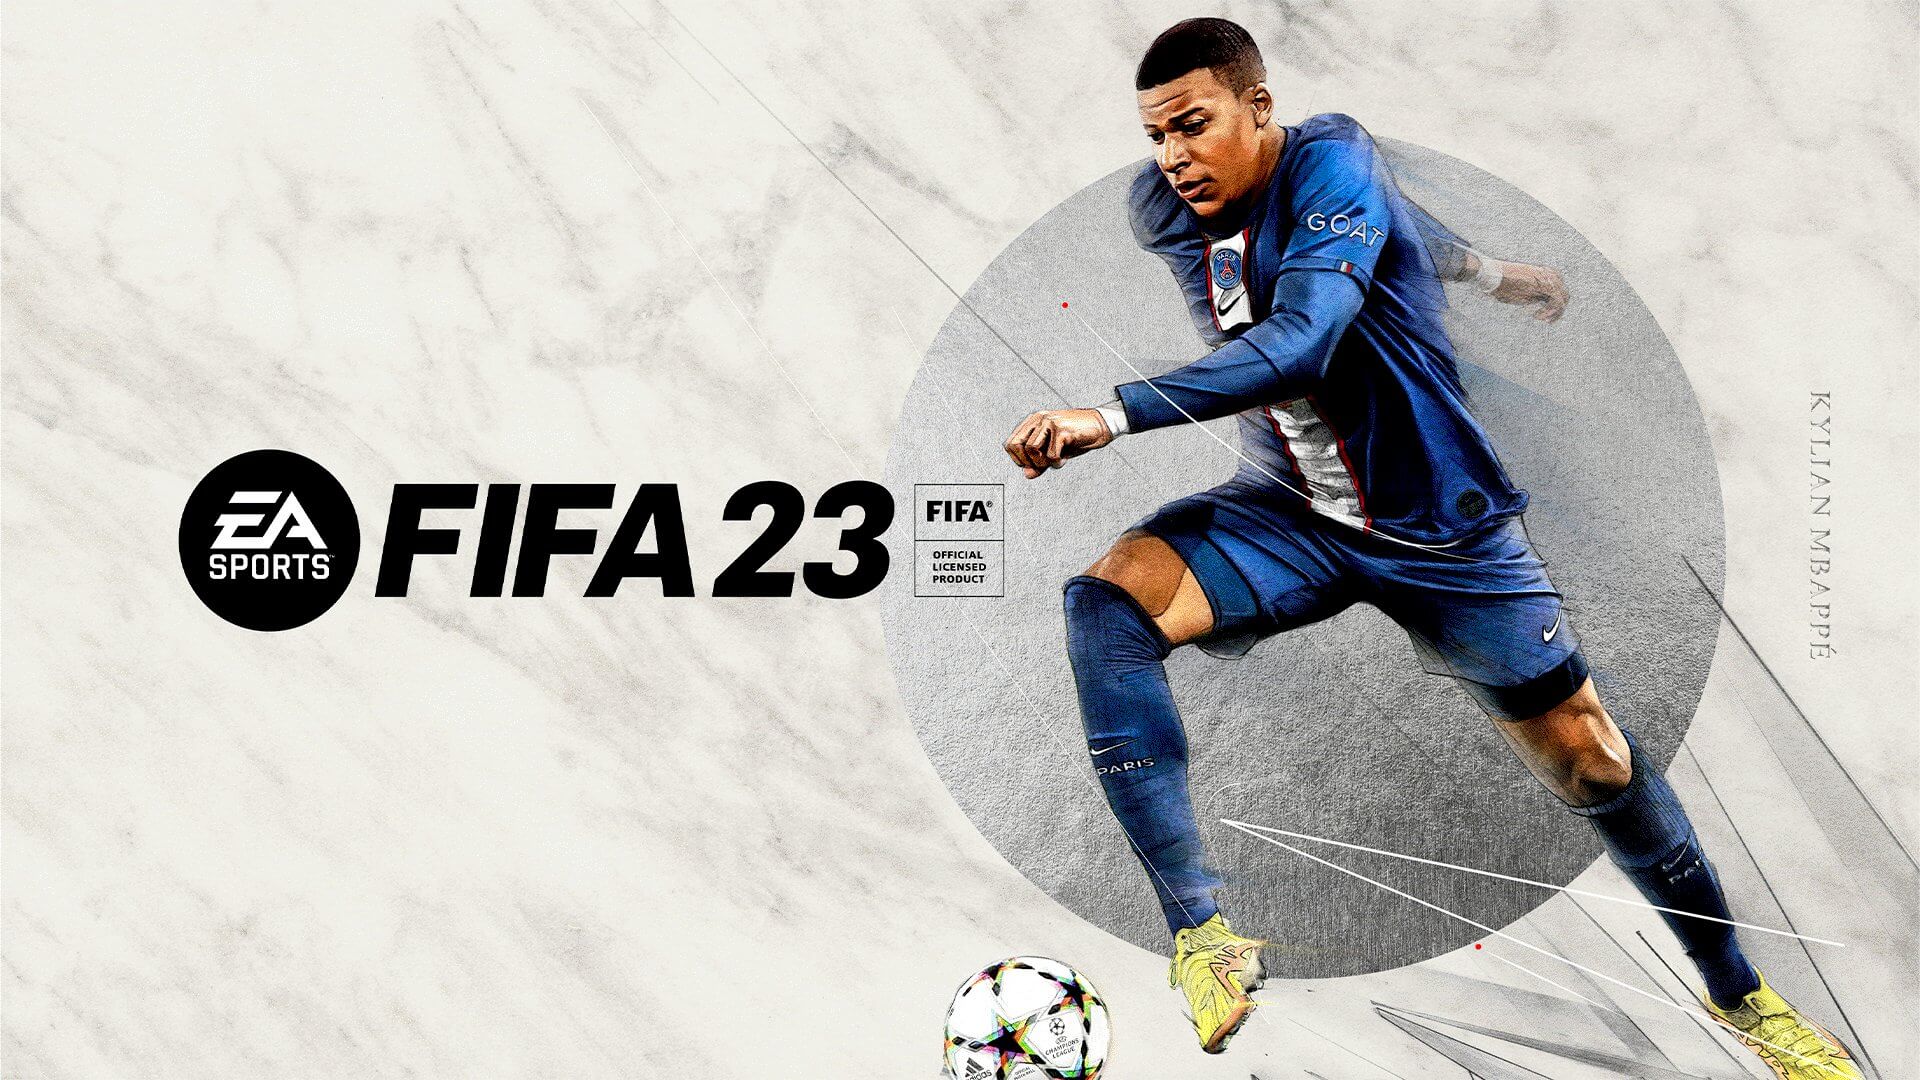 Imagem promocional do FIFA 23.